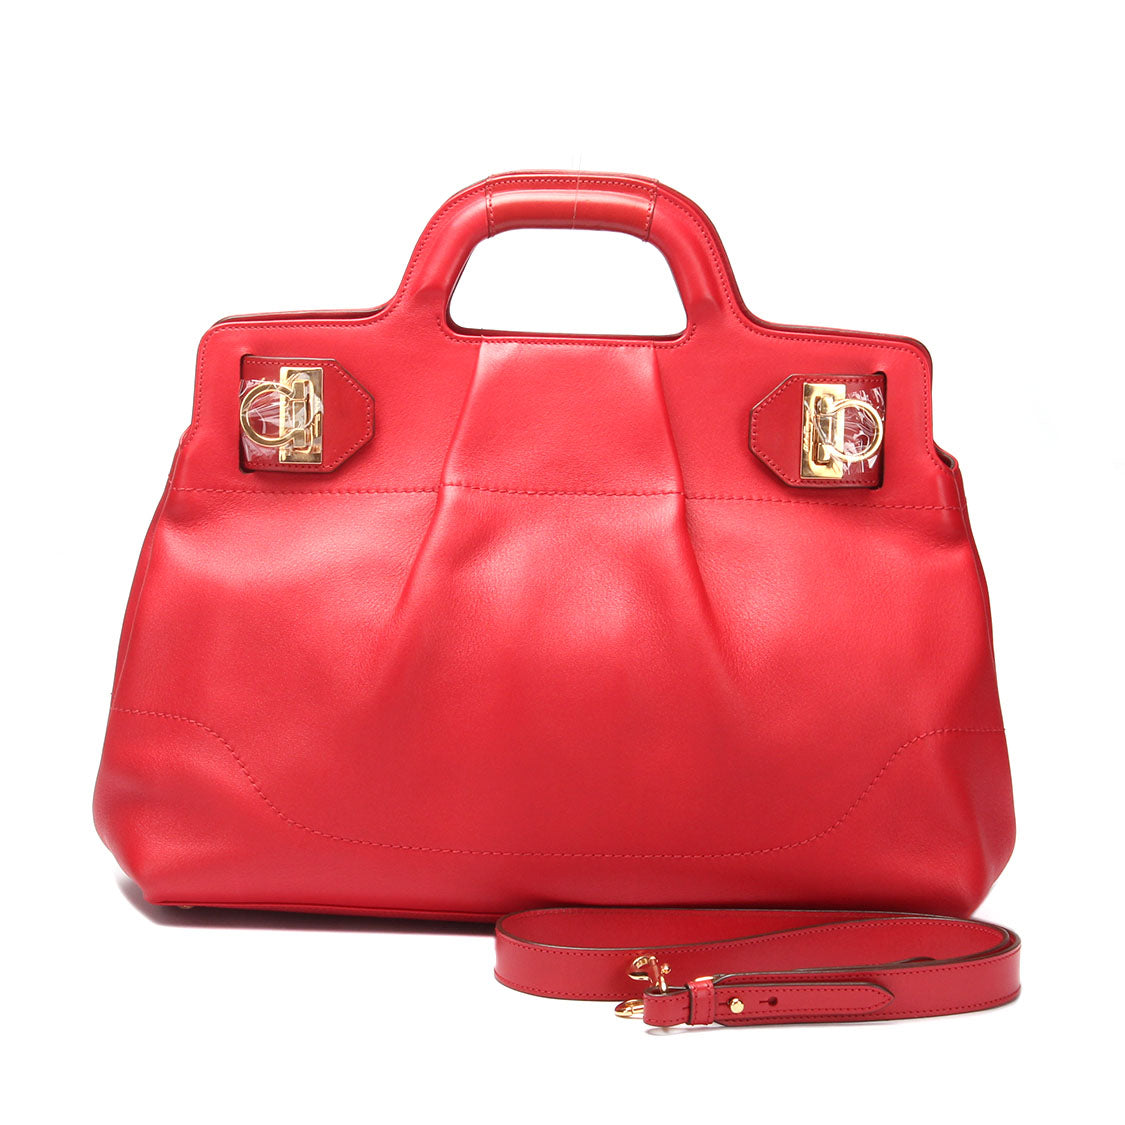 Gancini Leather Handbag DY-21 C465